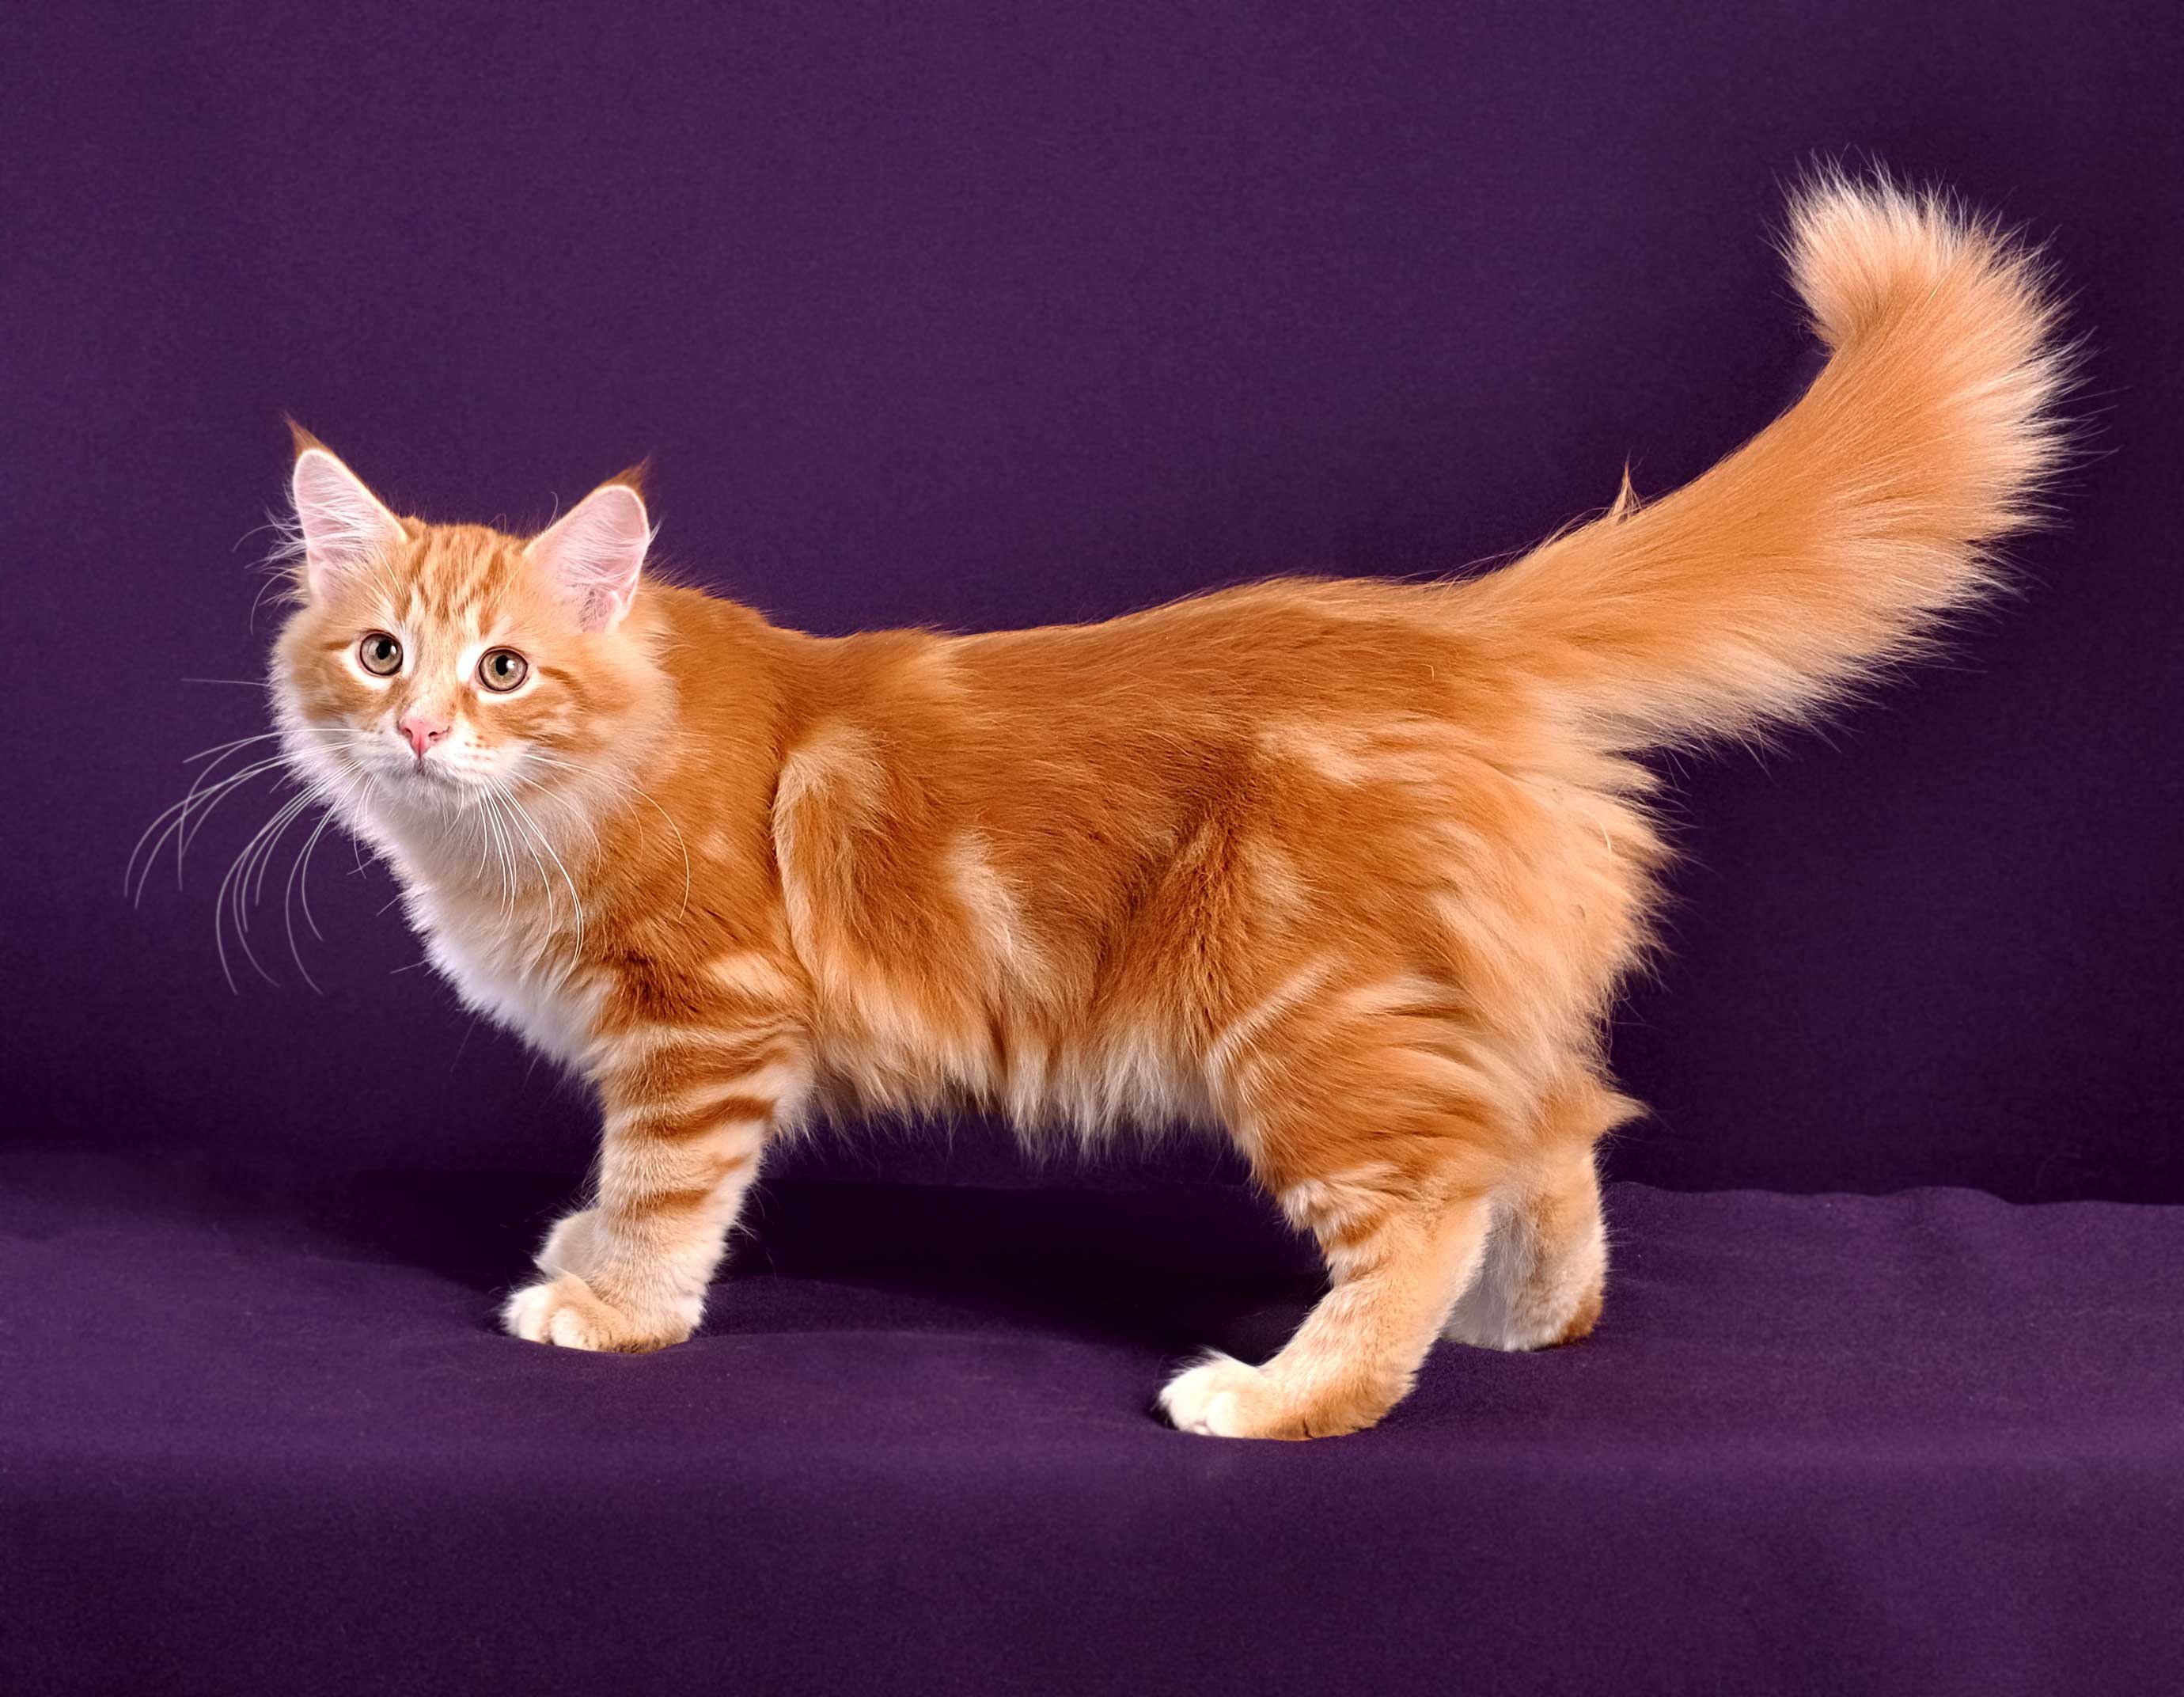 Сибирская порода кошек рыжие - картинки и фото koshka.top